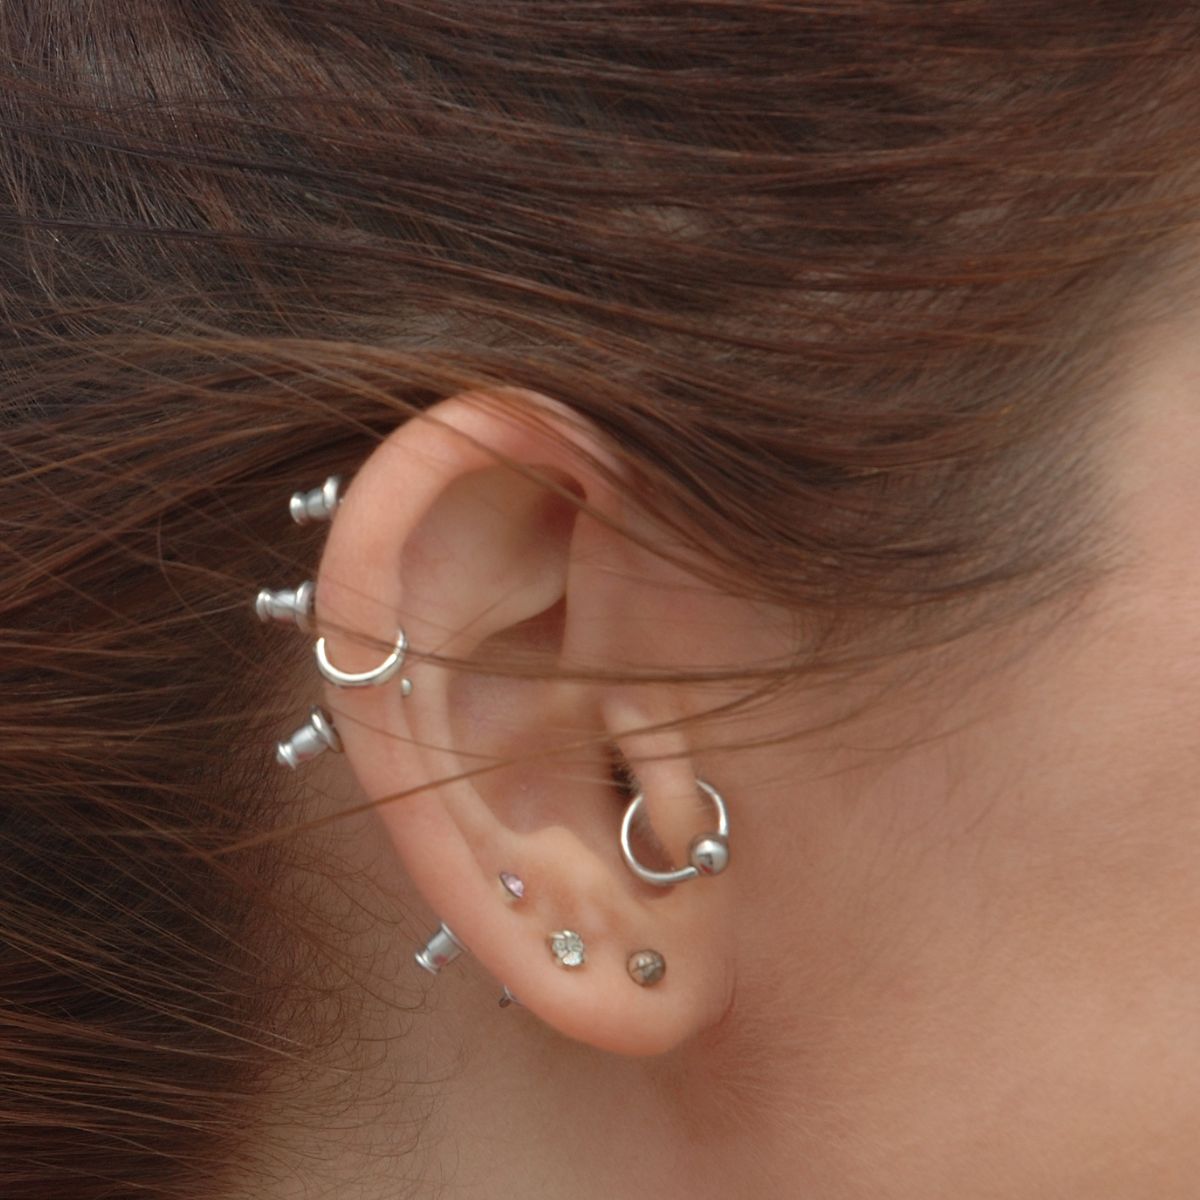 Several ear piercings on one ear